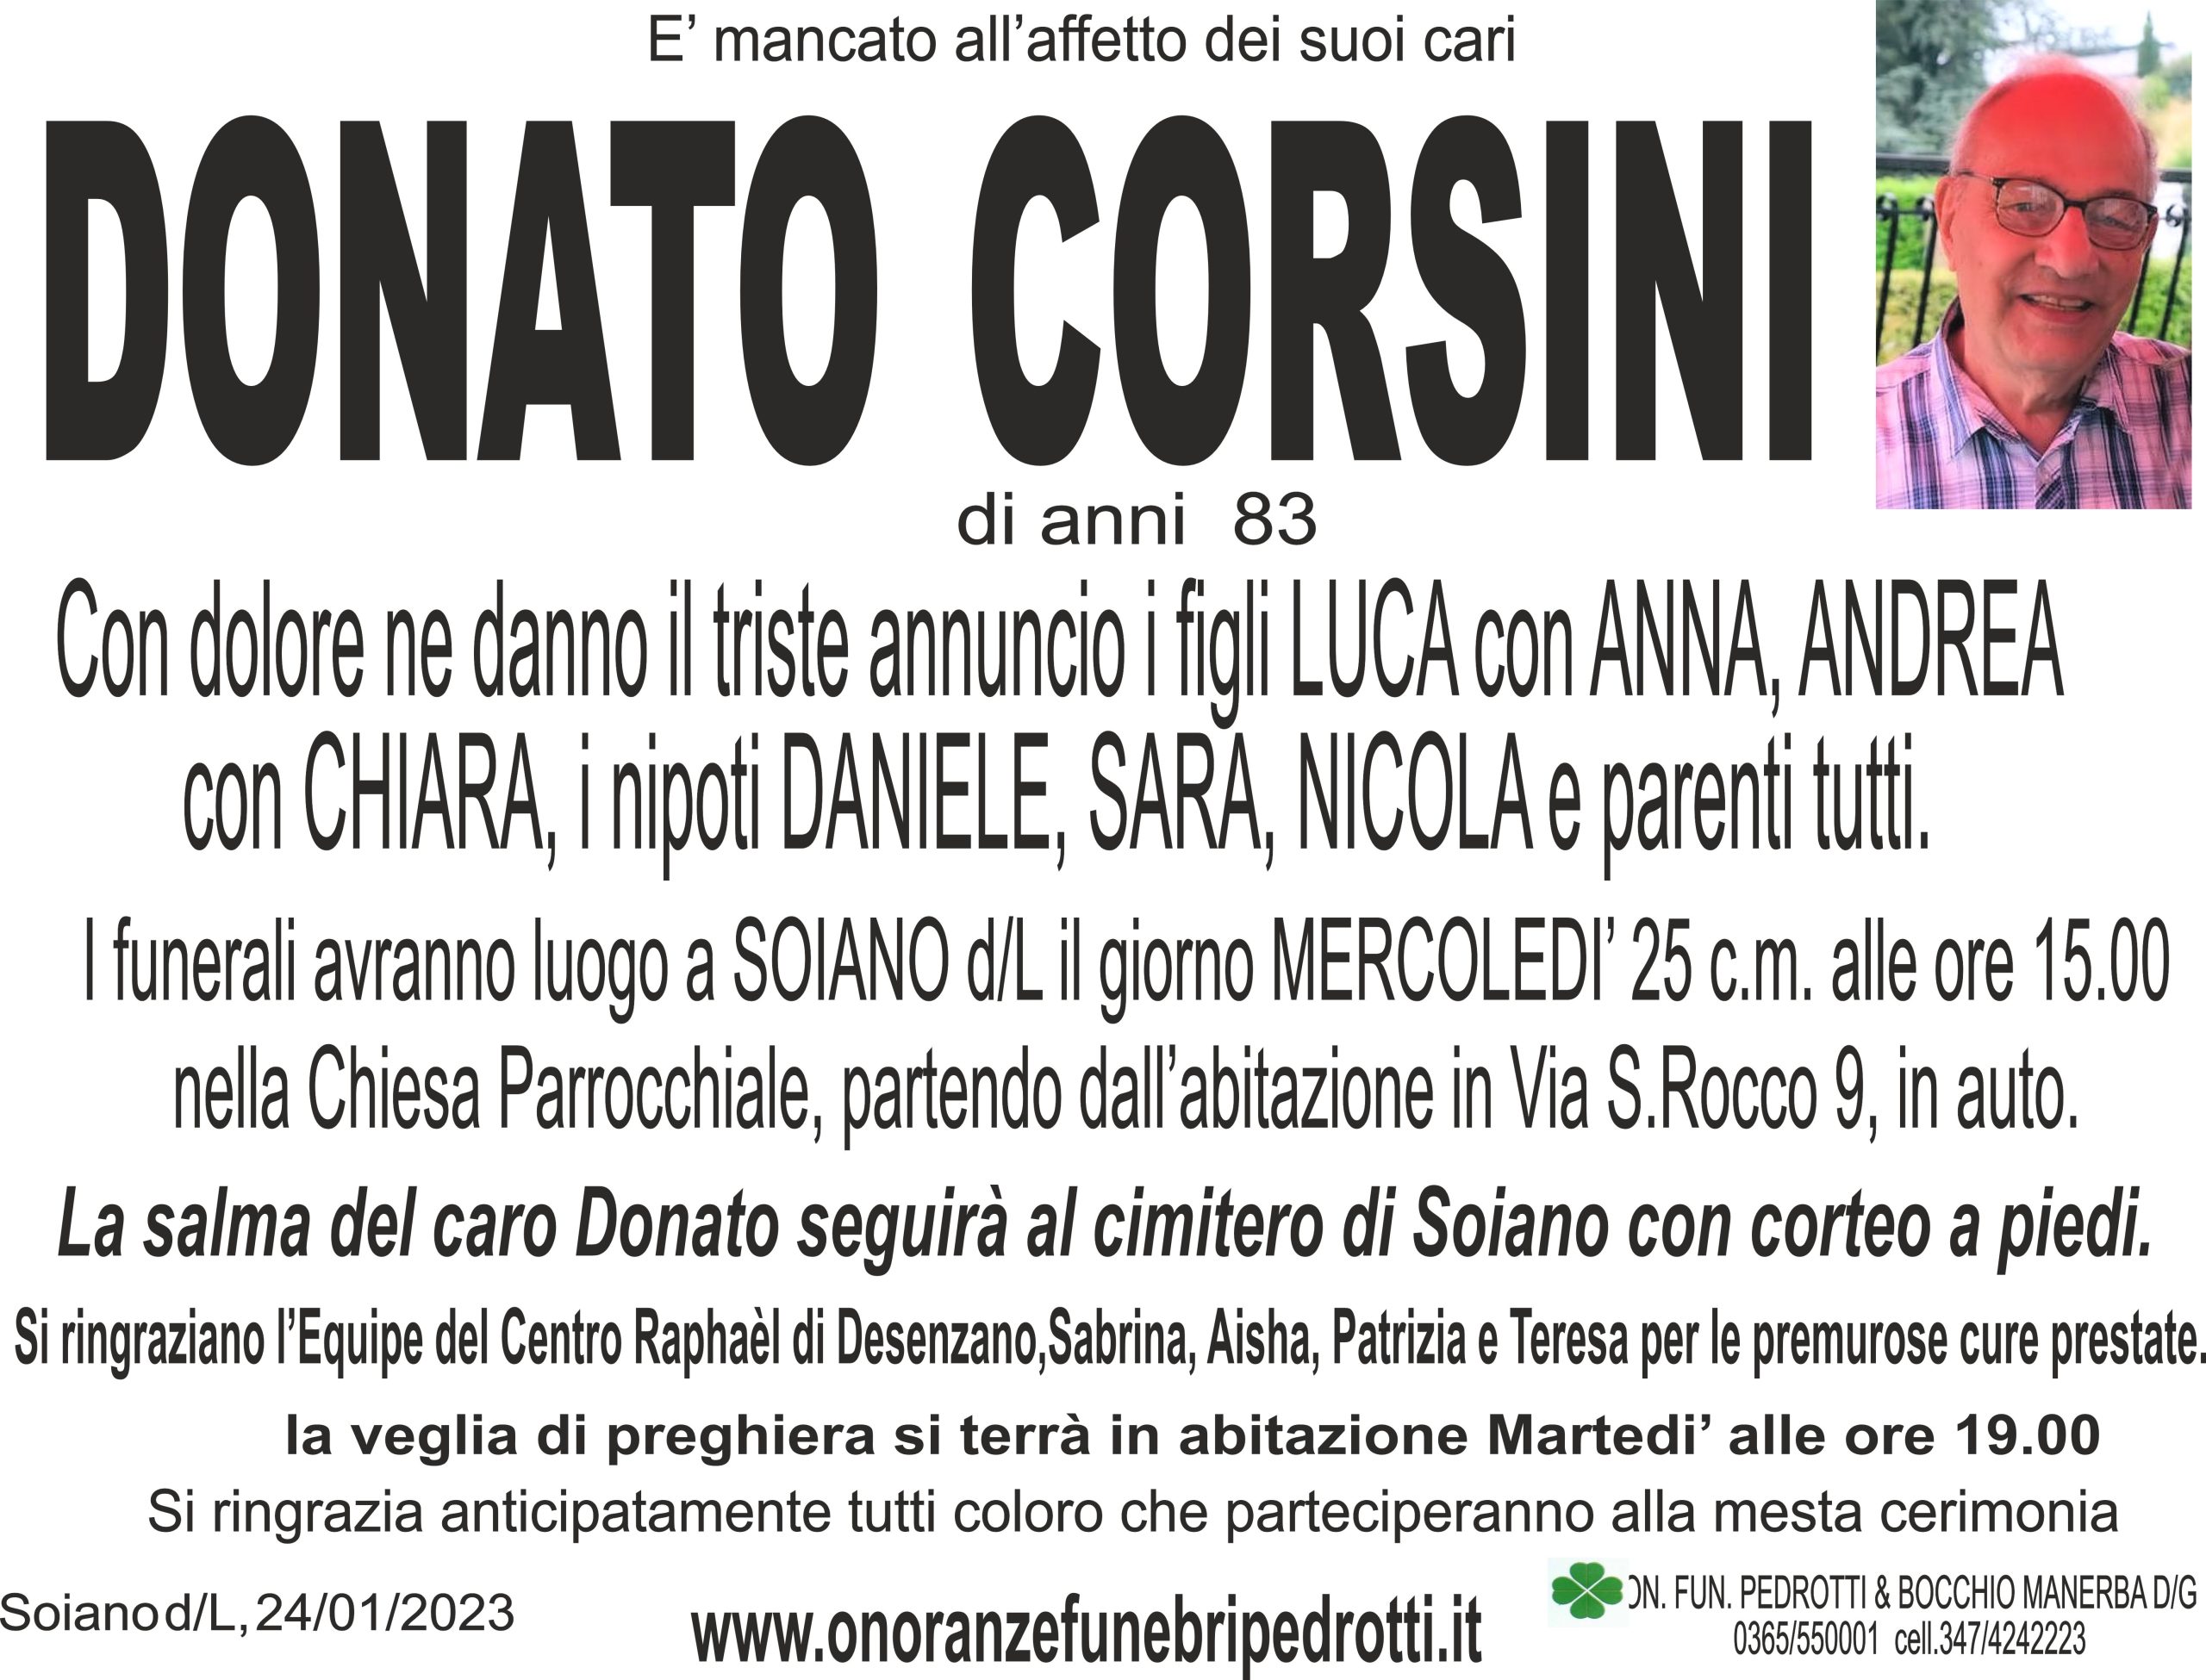 Al momento stai visualizzando Donato Corsini